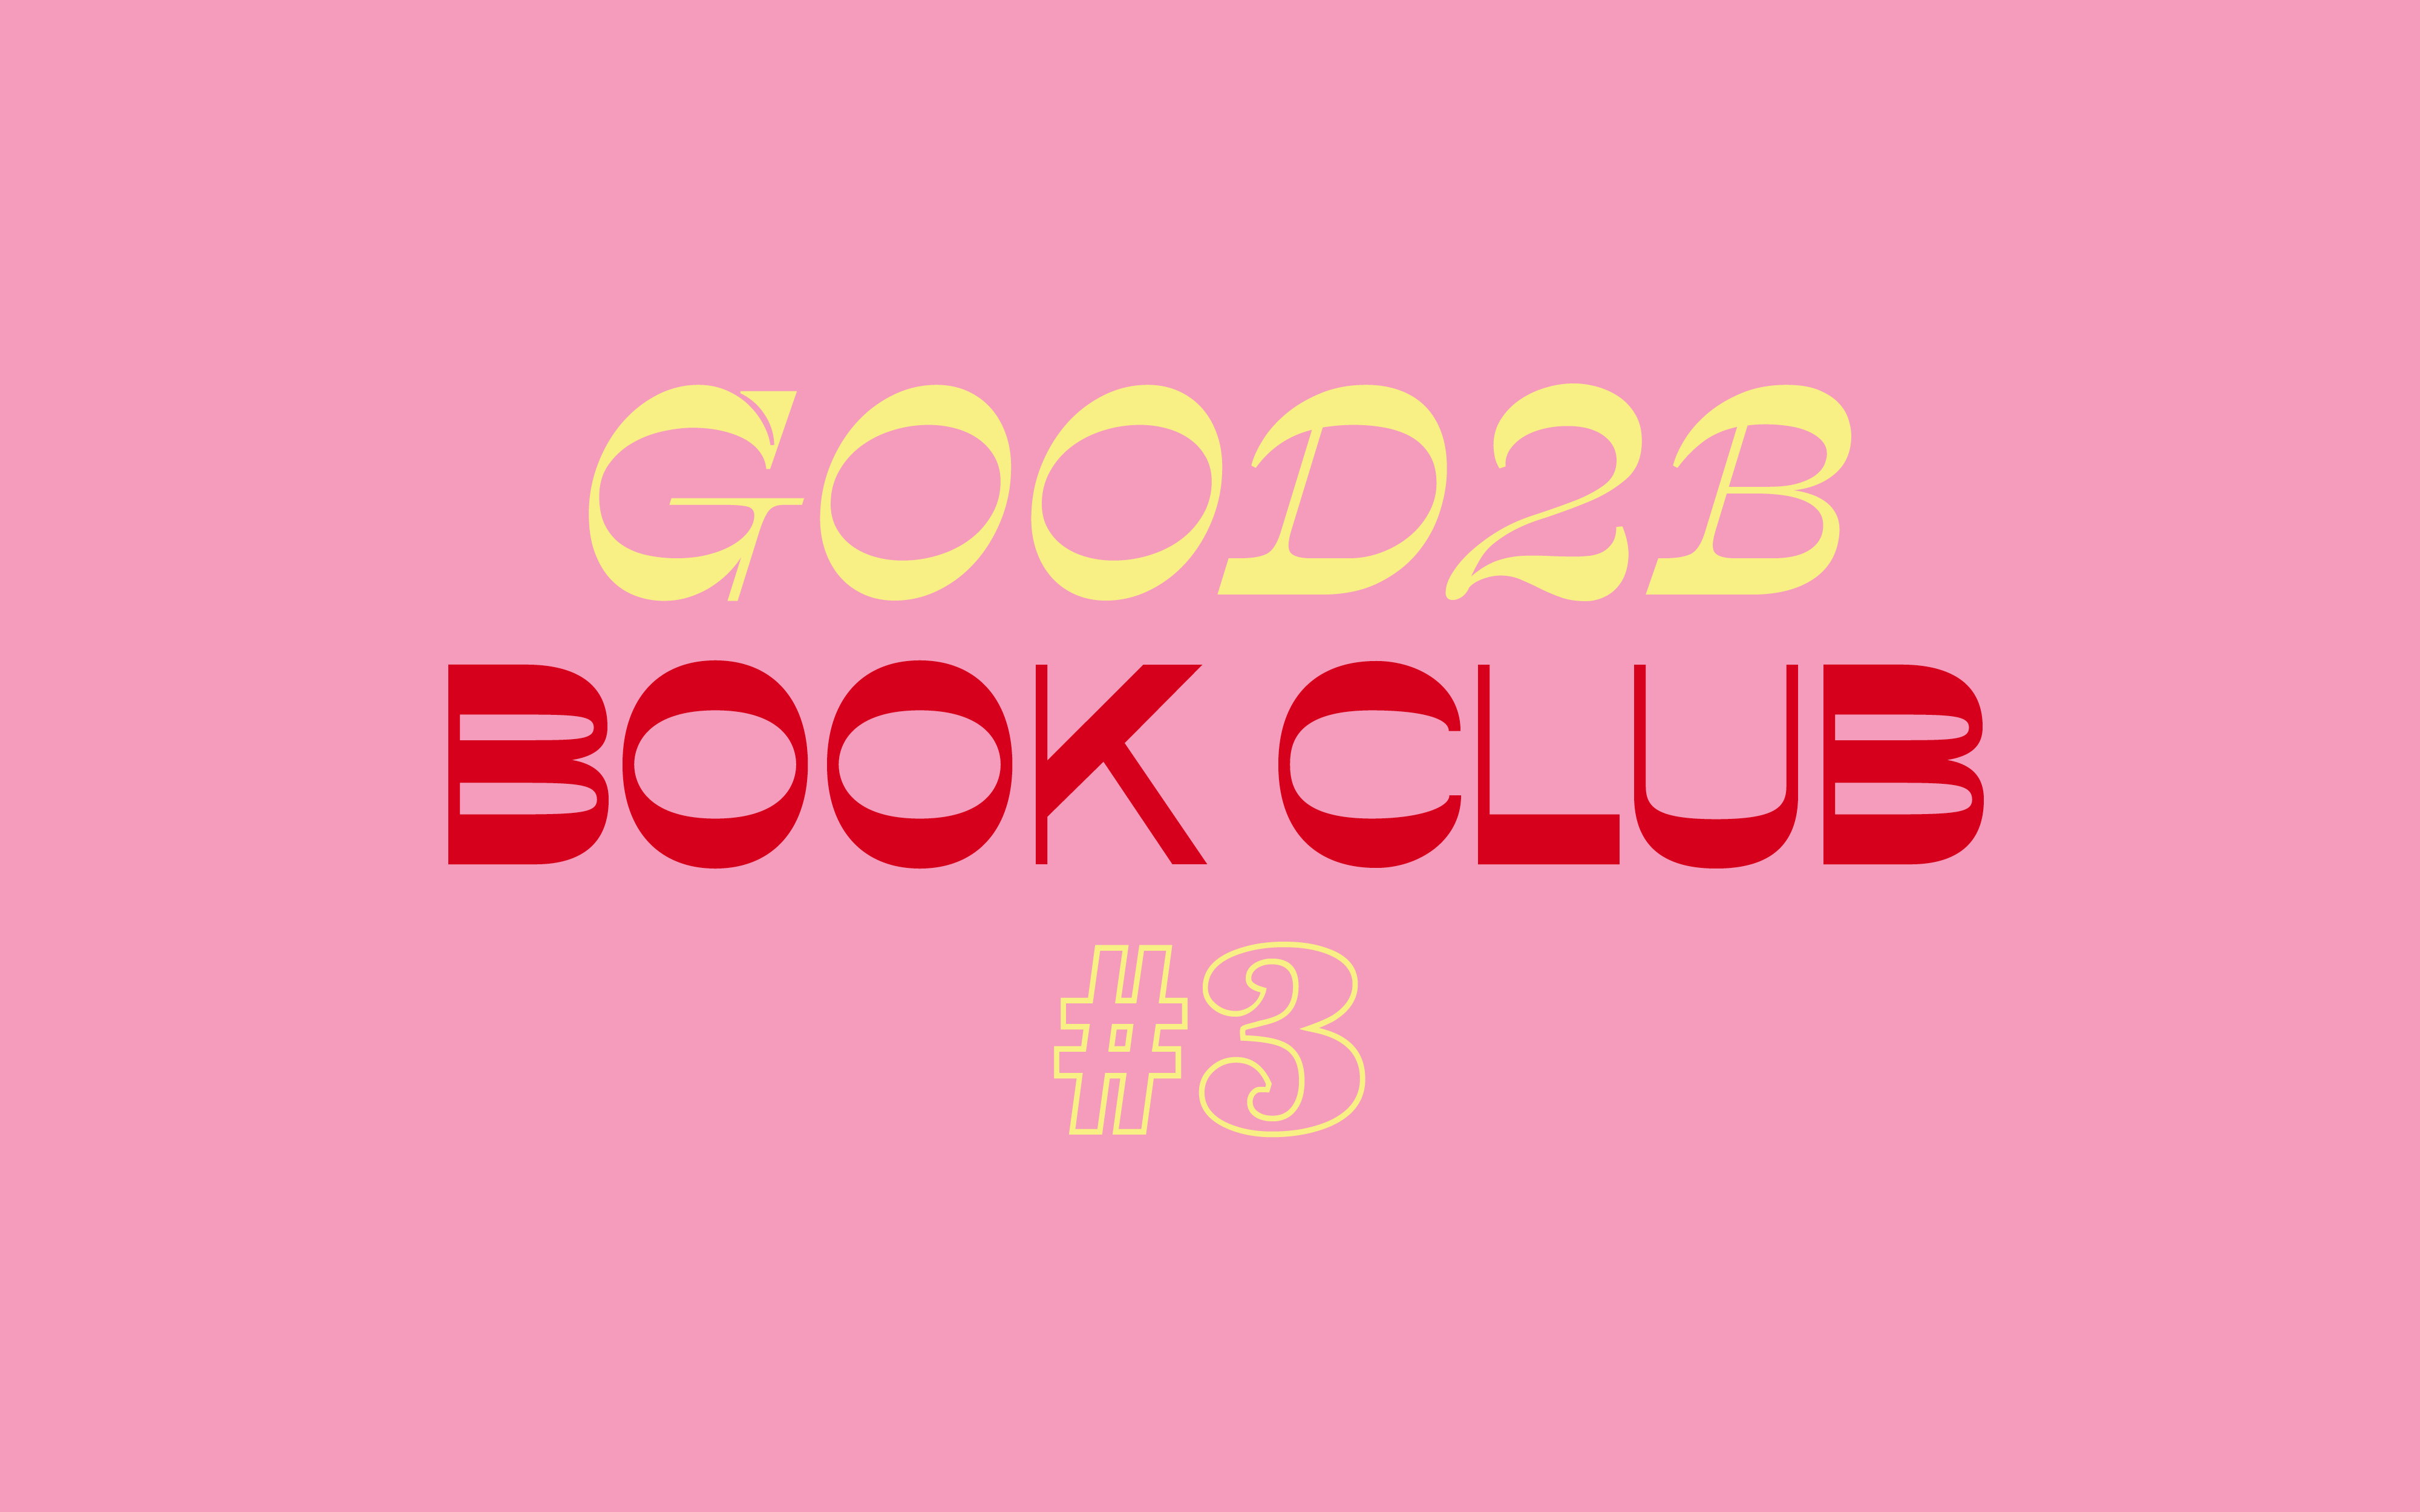 Good2b Book Club #3: ‘Quién de nosotros’, de Mario Benedetti